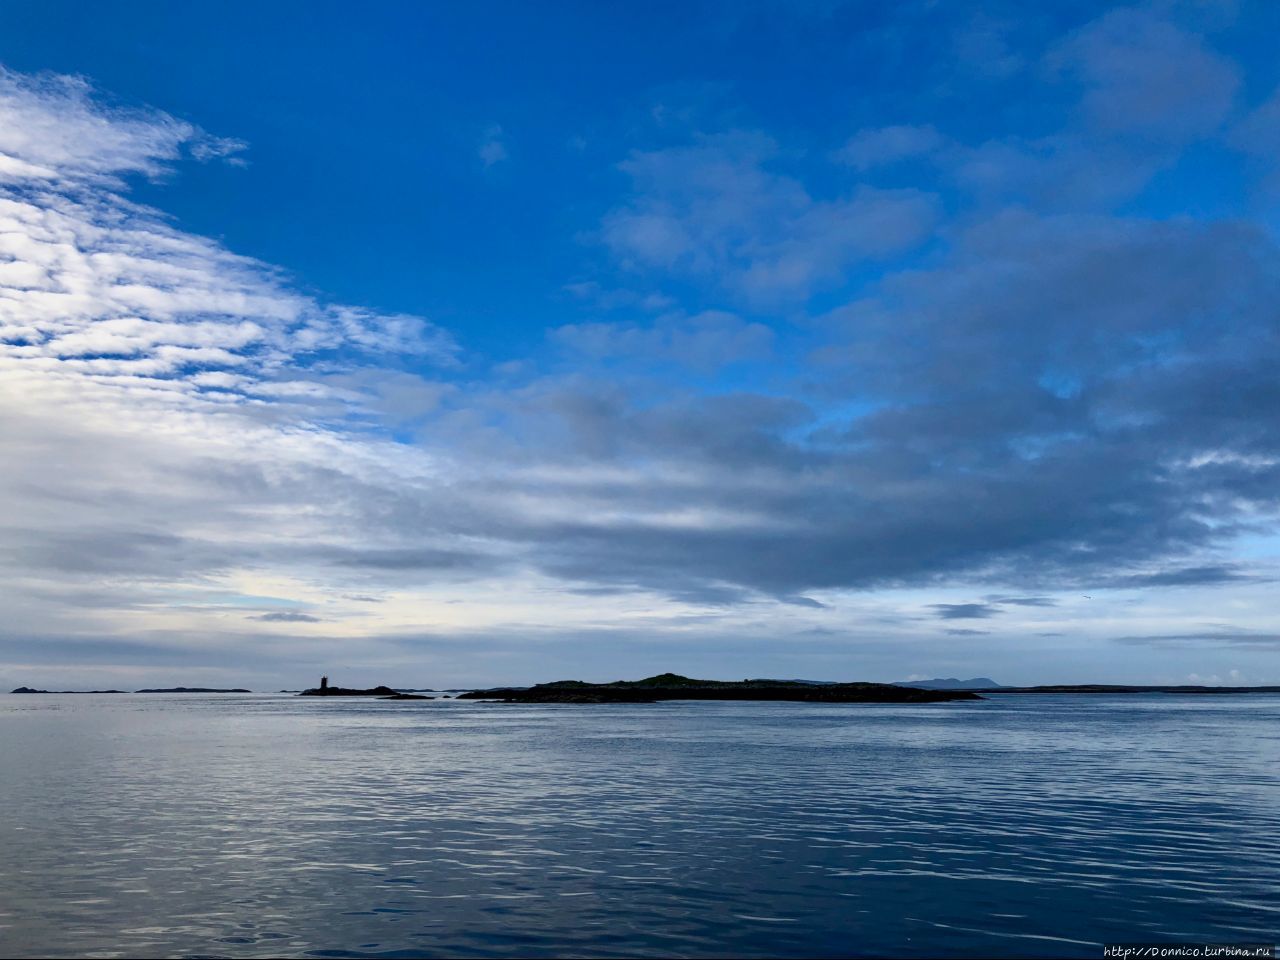 Последняя тайна Европы: Морская одиссея и Шпили-Вилли Остров Боререй, архипелаг Сент-Килда, Великобритания